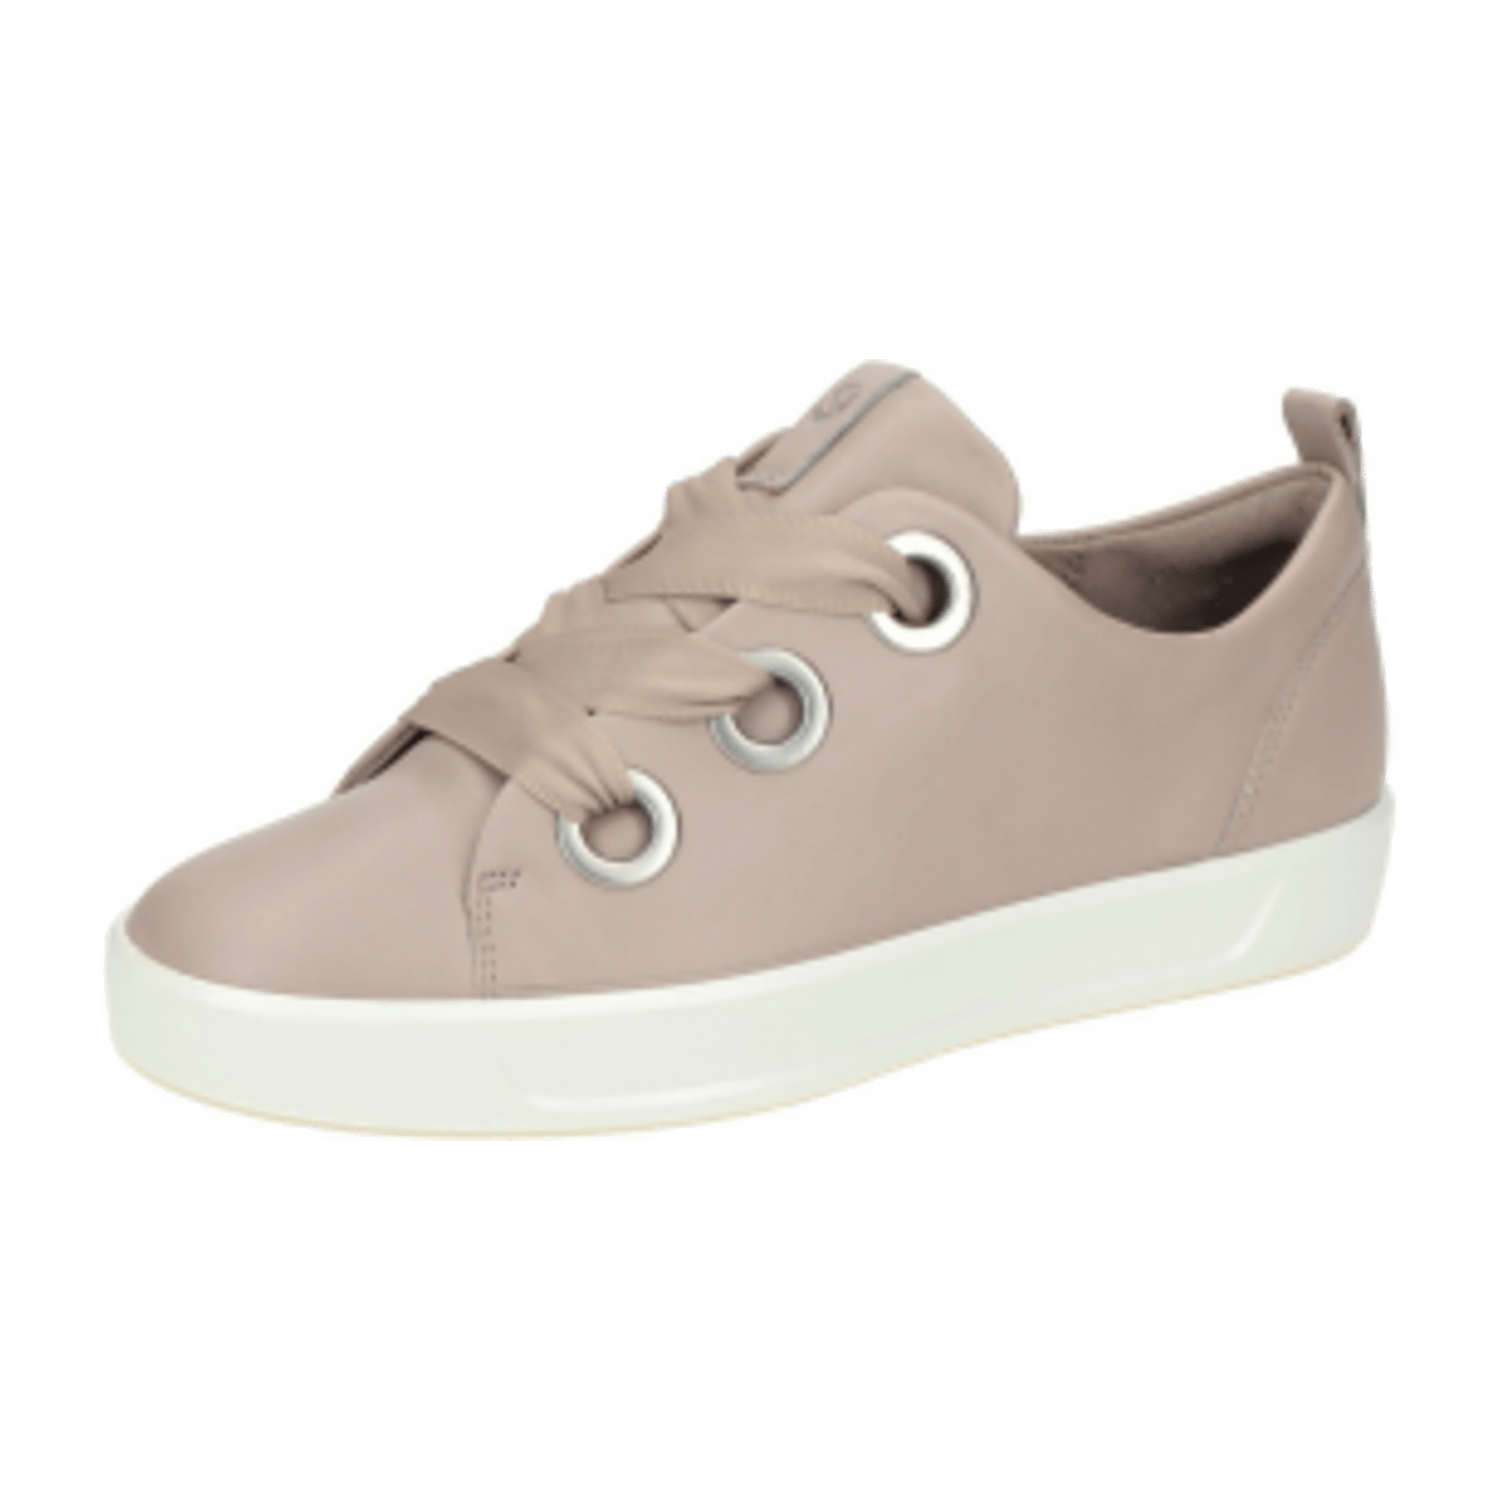 Ecco Soft 8 Schuhe grau rose Sneakers 470543